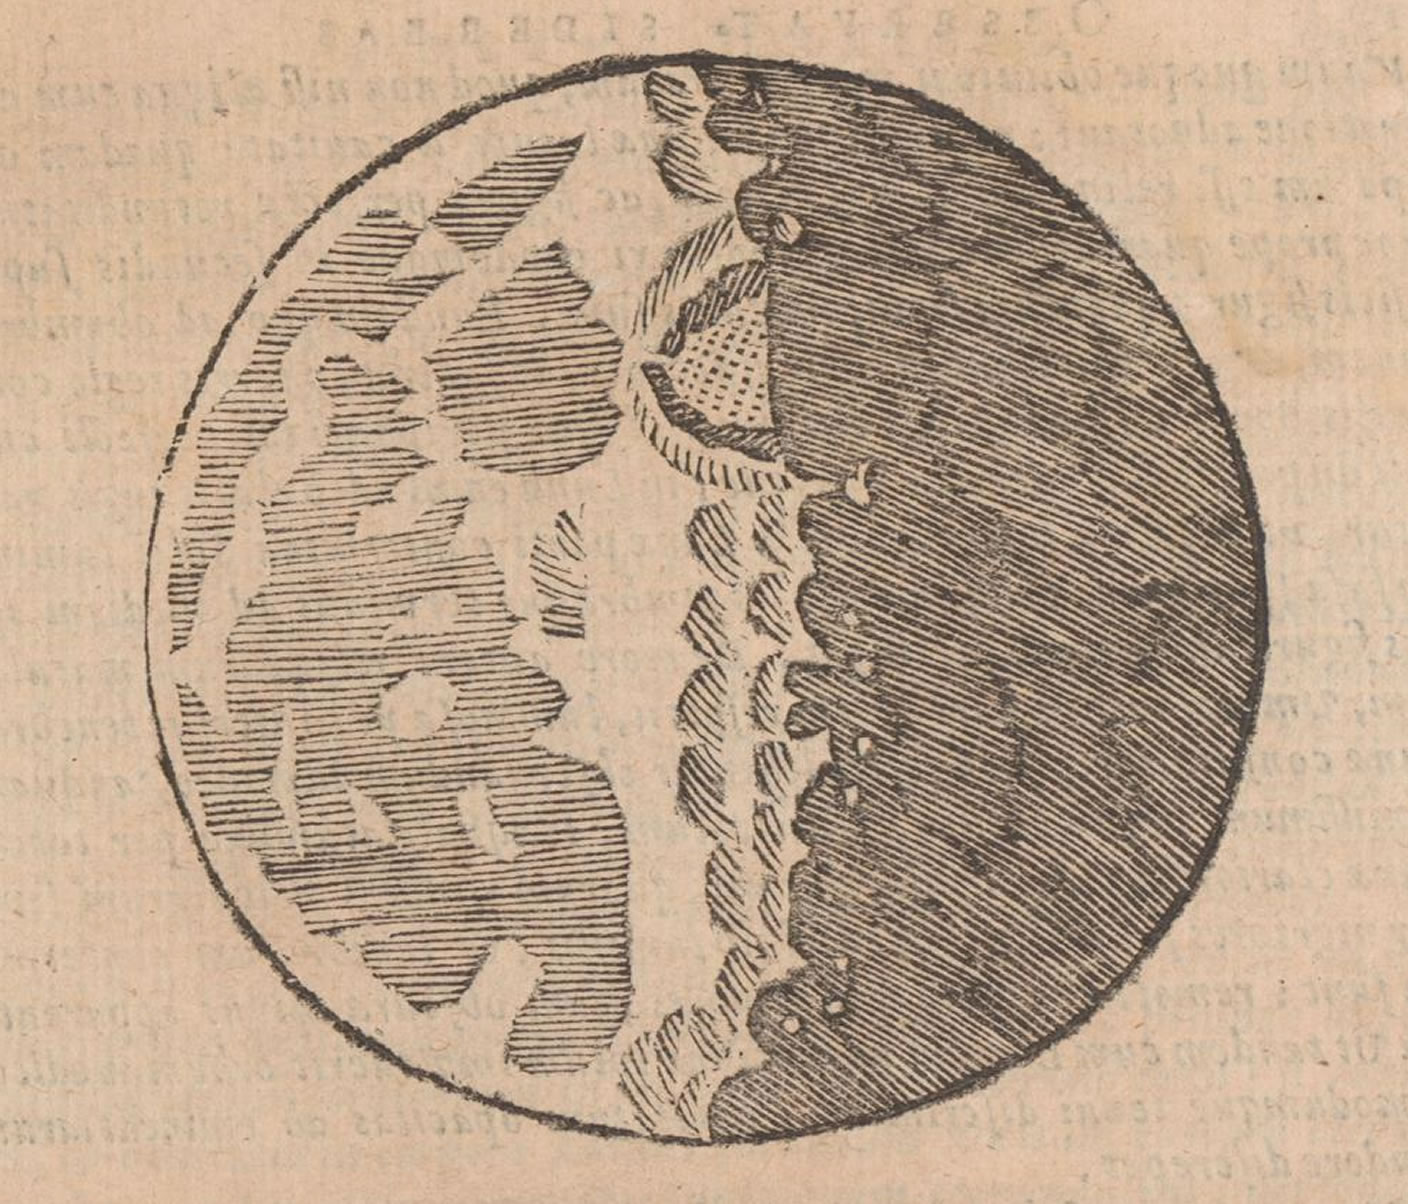 Sidereus nuncius Zeichnung von Galilei: Die Schattenzonen und die beleuchteten Bergspitzen nannte Galilei &quot;cuspidi&quot; (Hörner). Anhand der &quot;cuspidi&quot; erfand er eine Methode zur Höhenpeilung der Mondgebirge.&nbsp;Alte und Seltene Drucke. Rar_4432:1. e-rara.ch